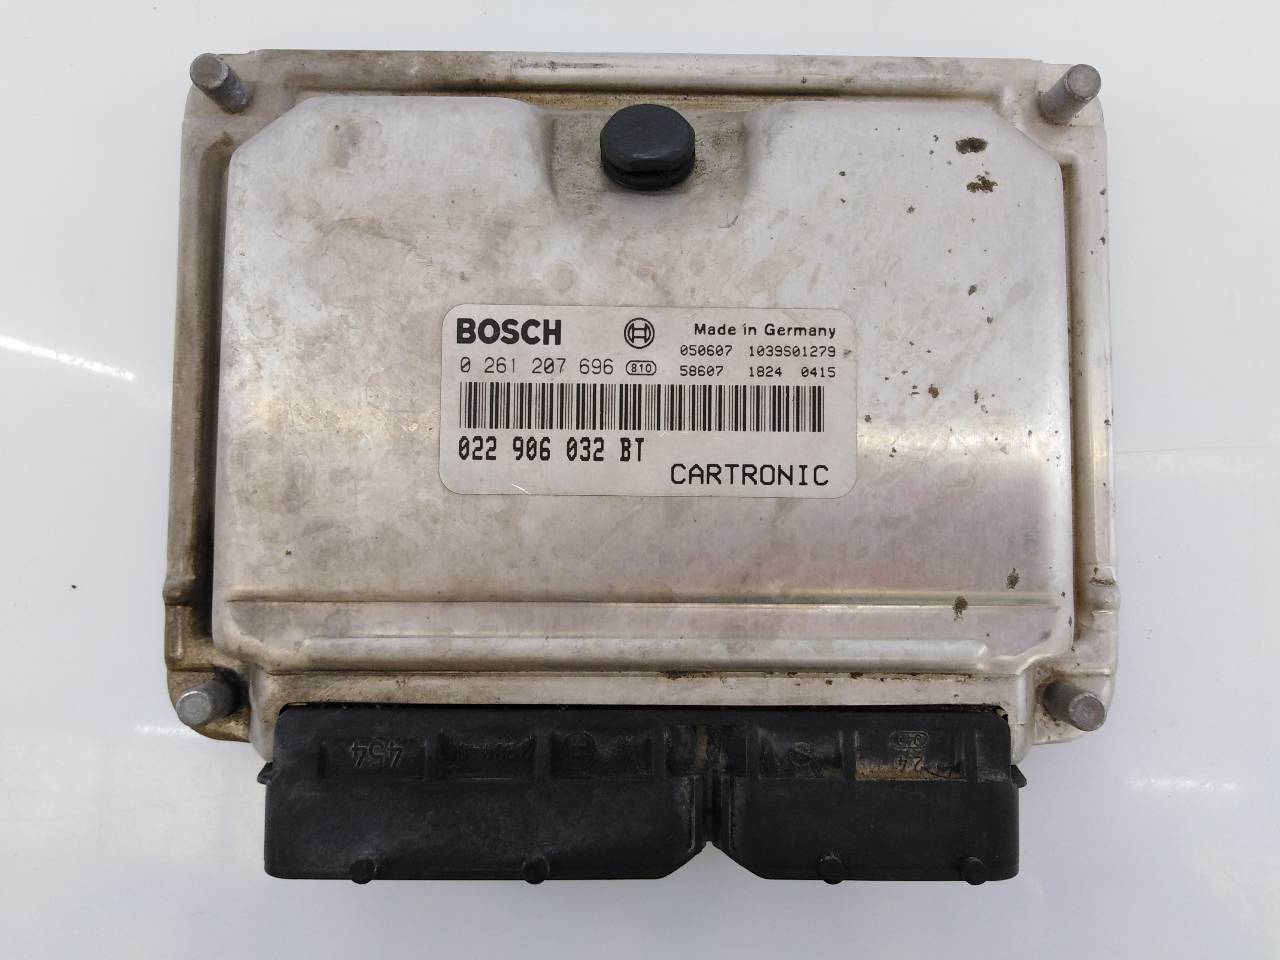 PORSCHE Cayenne 955 (2002-2010) Блок управления двигателем 022906032BT, 0261207696, E3-B6-26-1 18687043